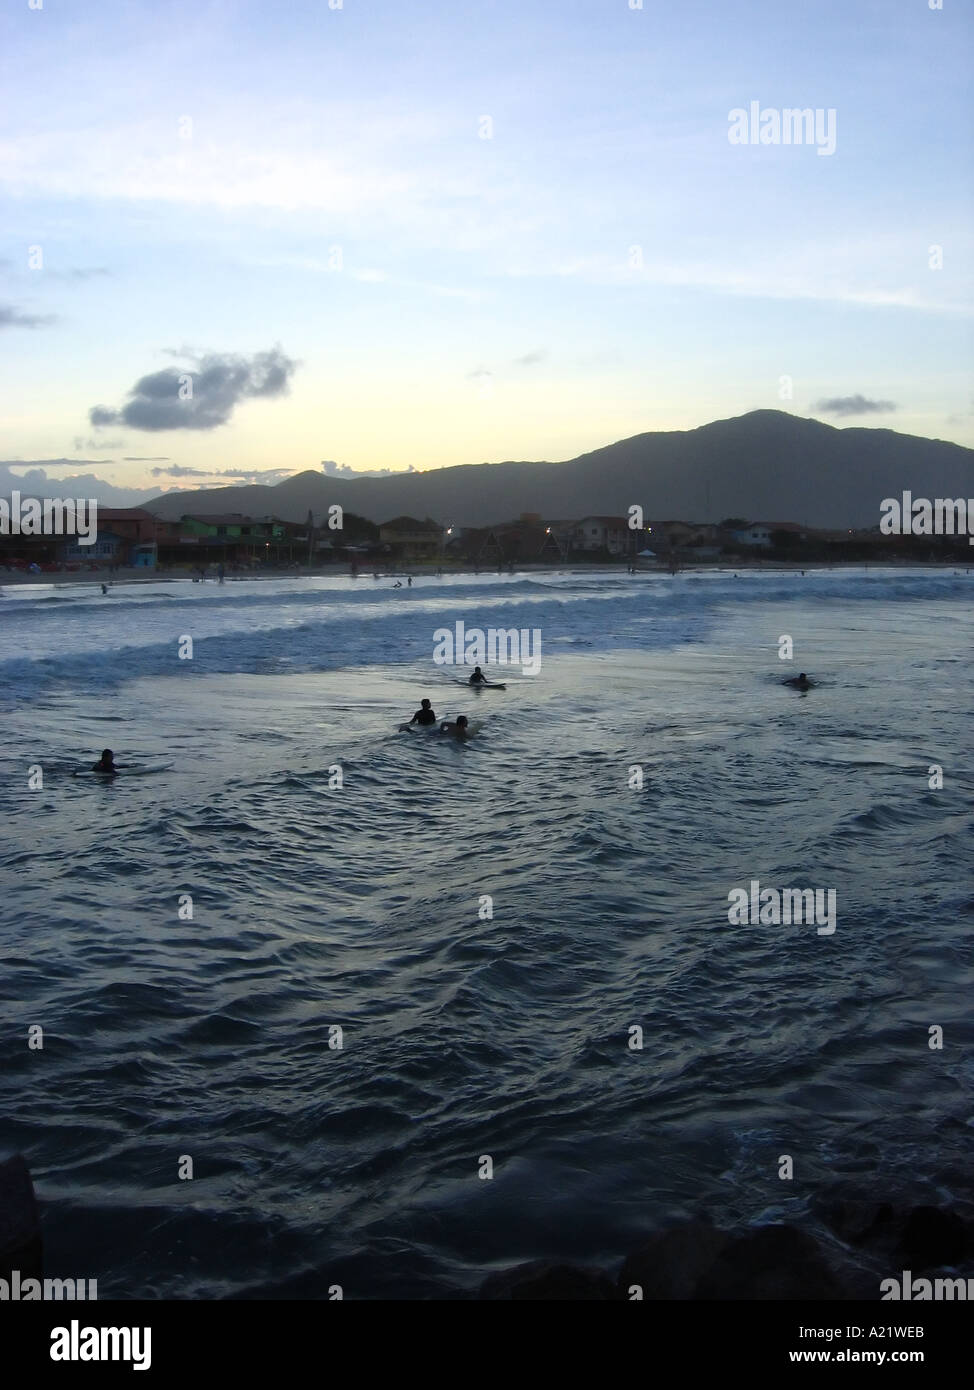 Les surfeurs attendent la prochaine vague Florianopolis Brésil Amérique du Sud Banque D'Images